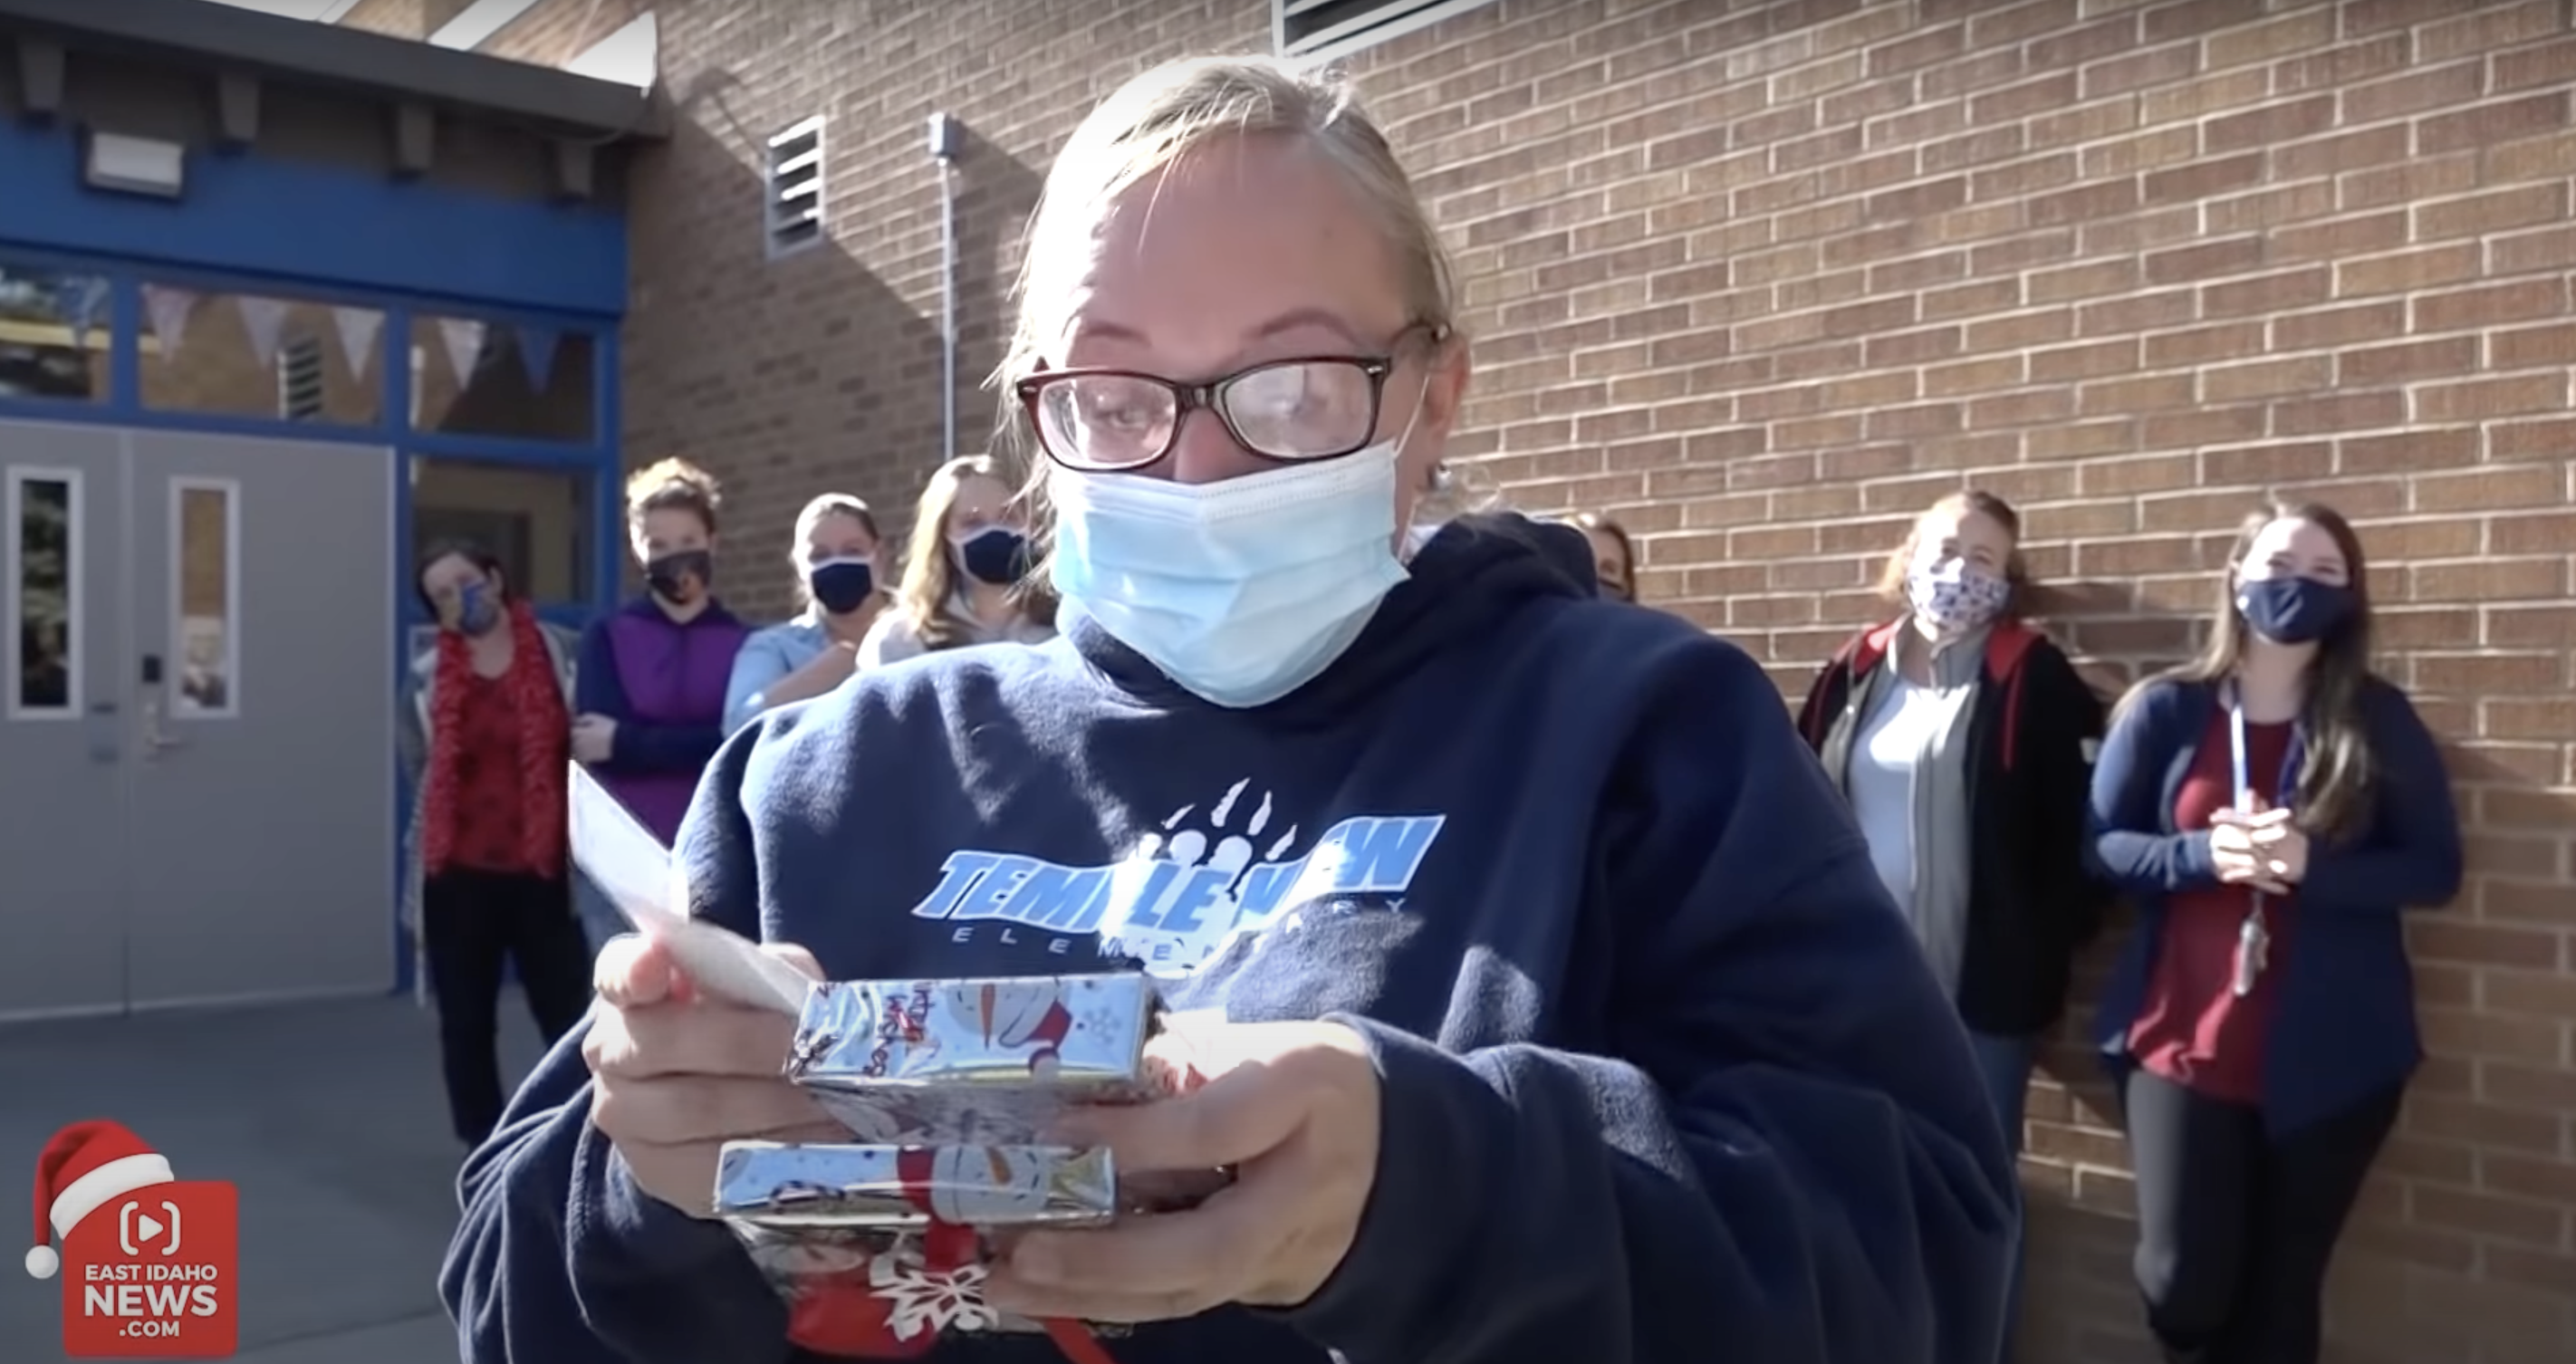 Darci Orchard est photographiée en train d'ouvrir le paquet cadeau du Père Noël secret. | Source : YouTube.com/East Idaho News